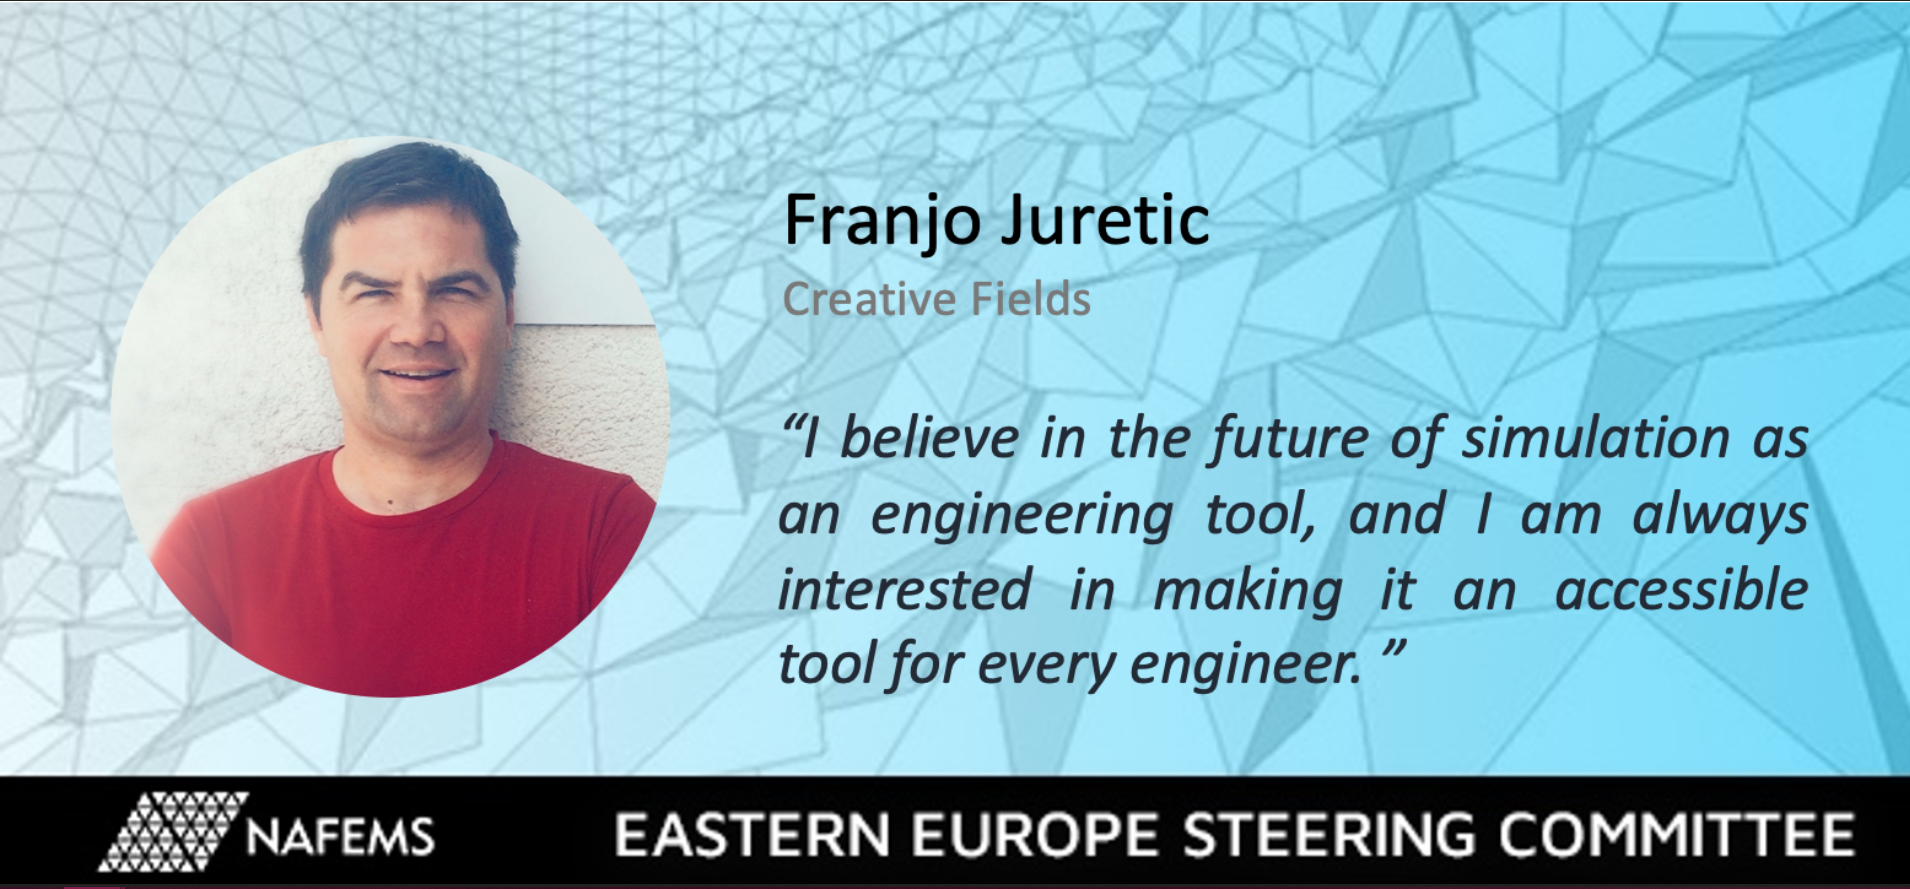 Franjo Juretic -  NAFEMS Eastern Europe Steering Committee